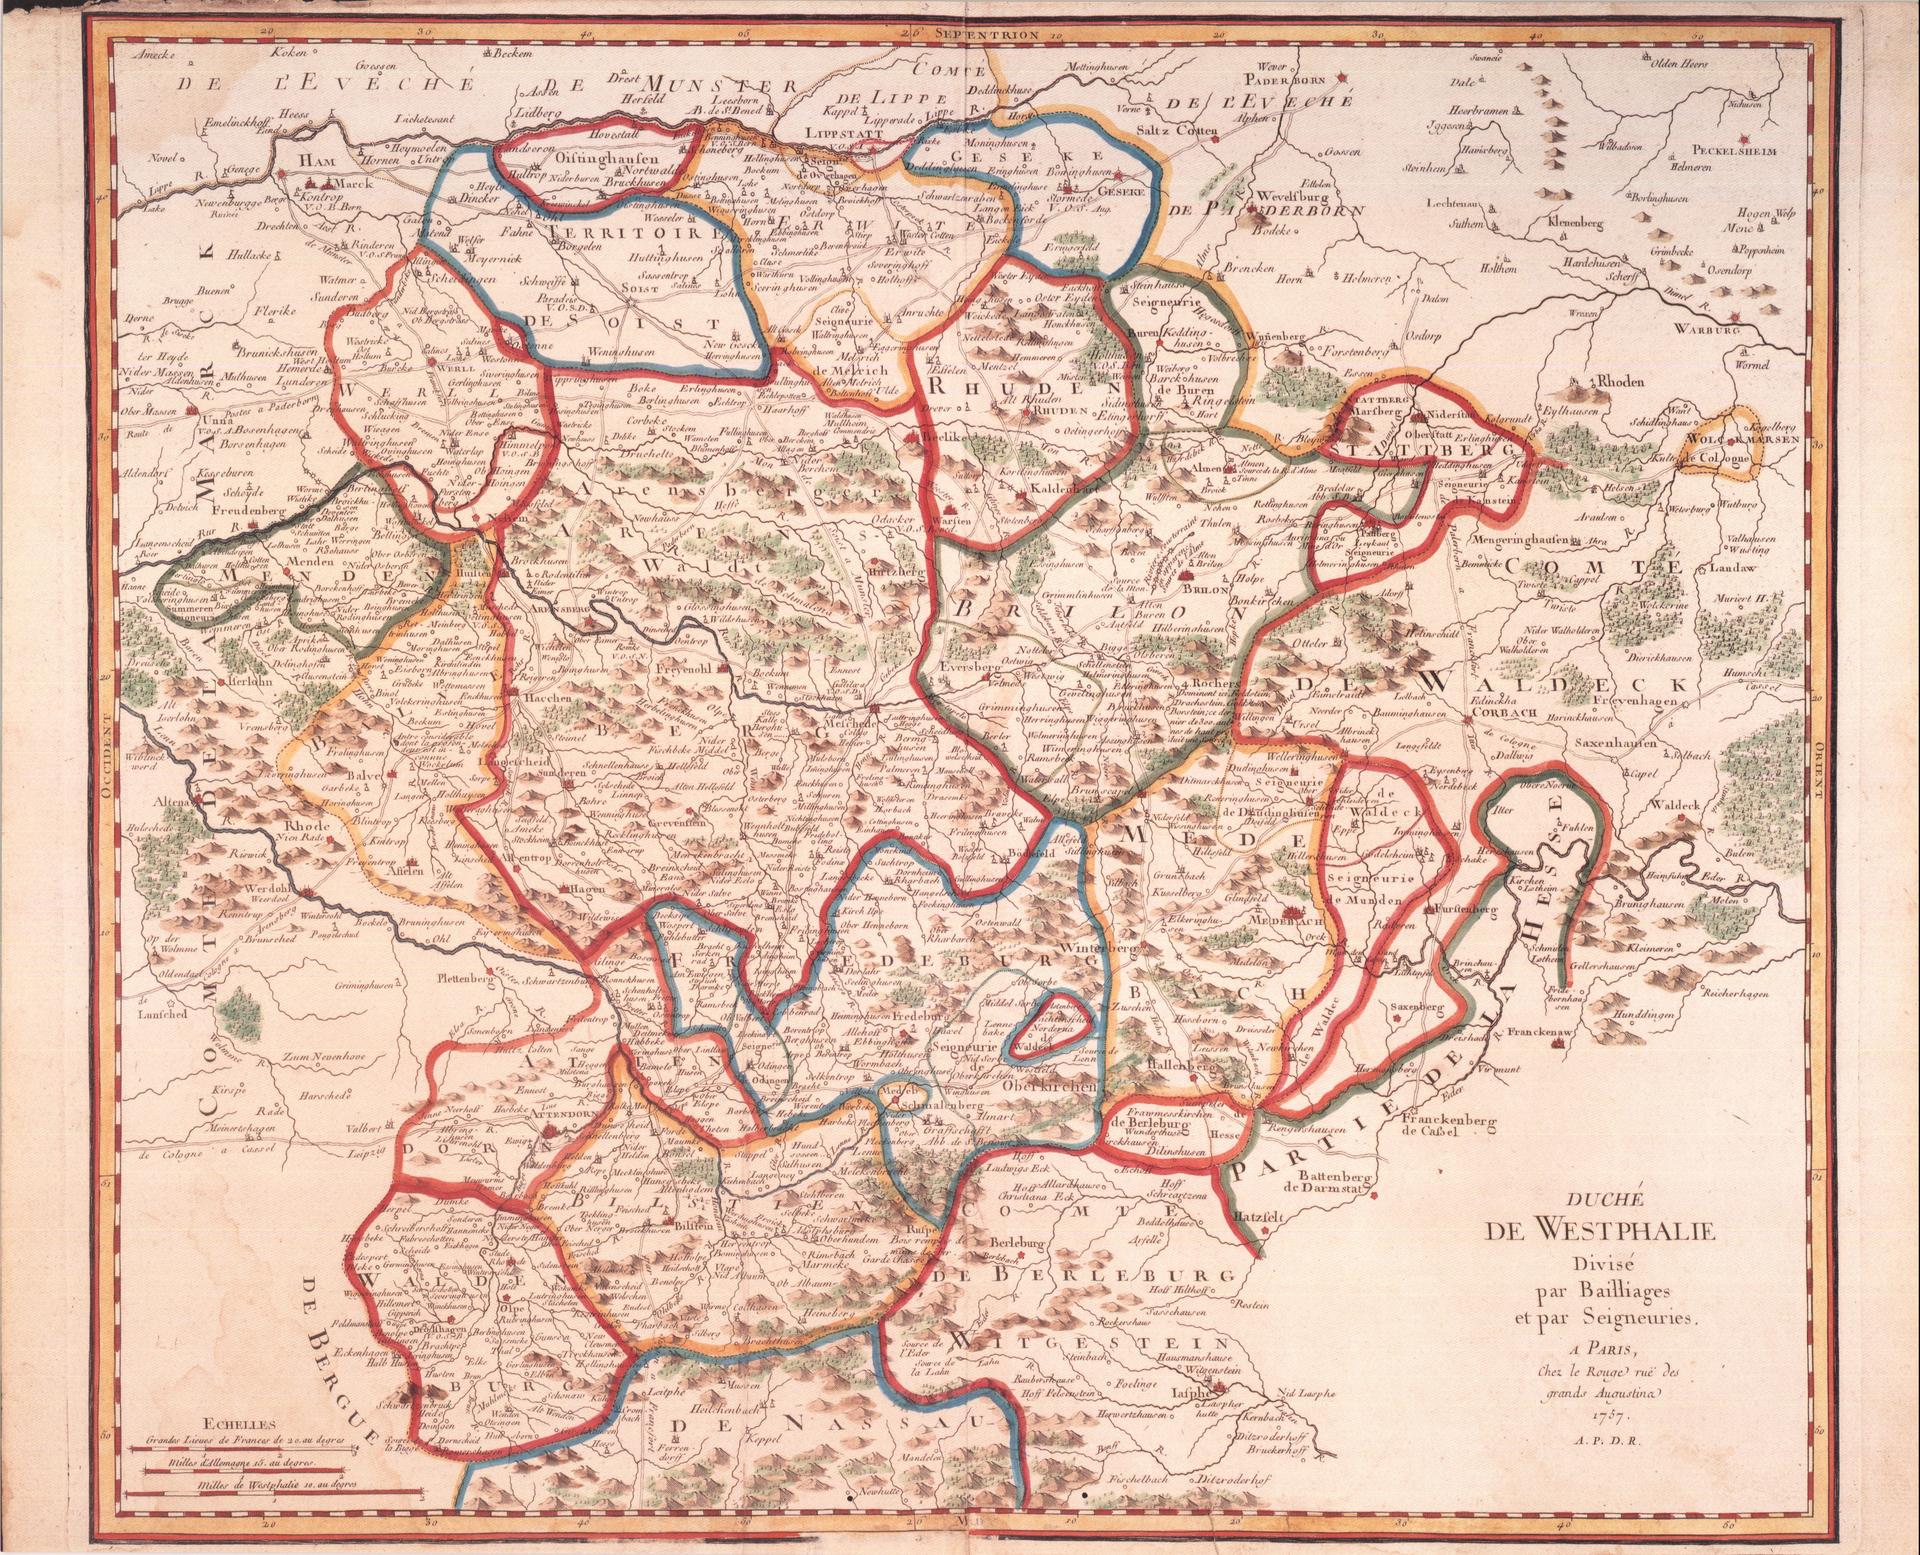 Historische Karte: Duche de Westphalie